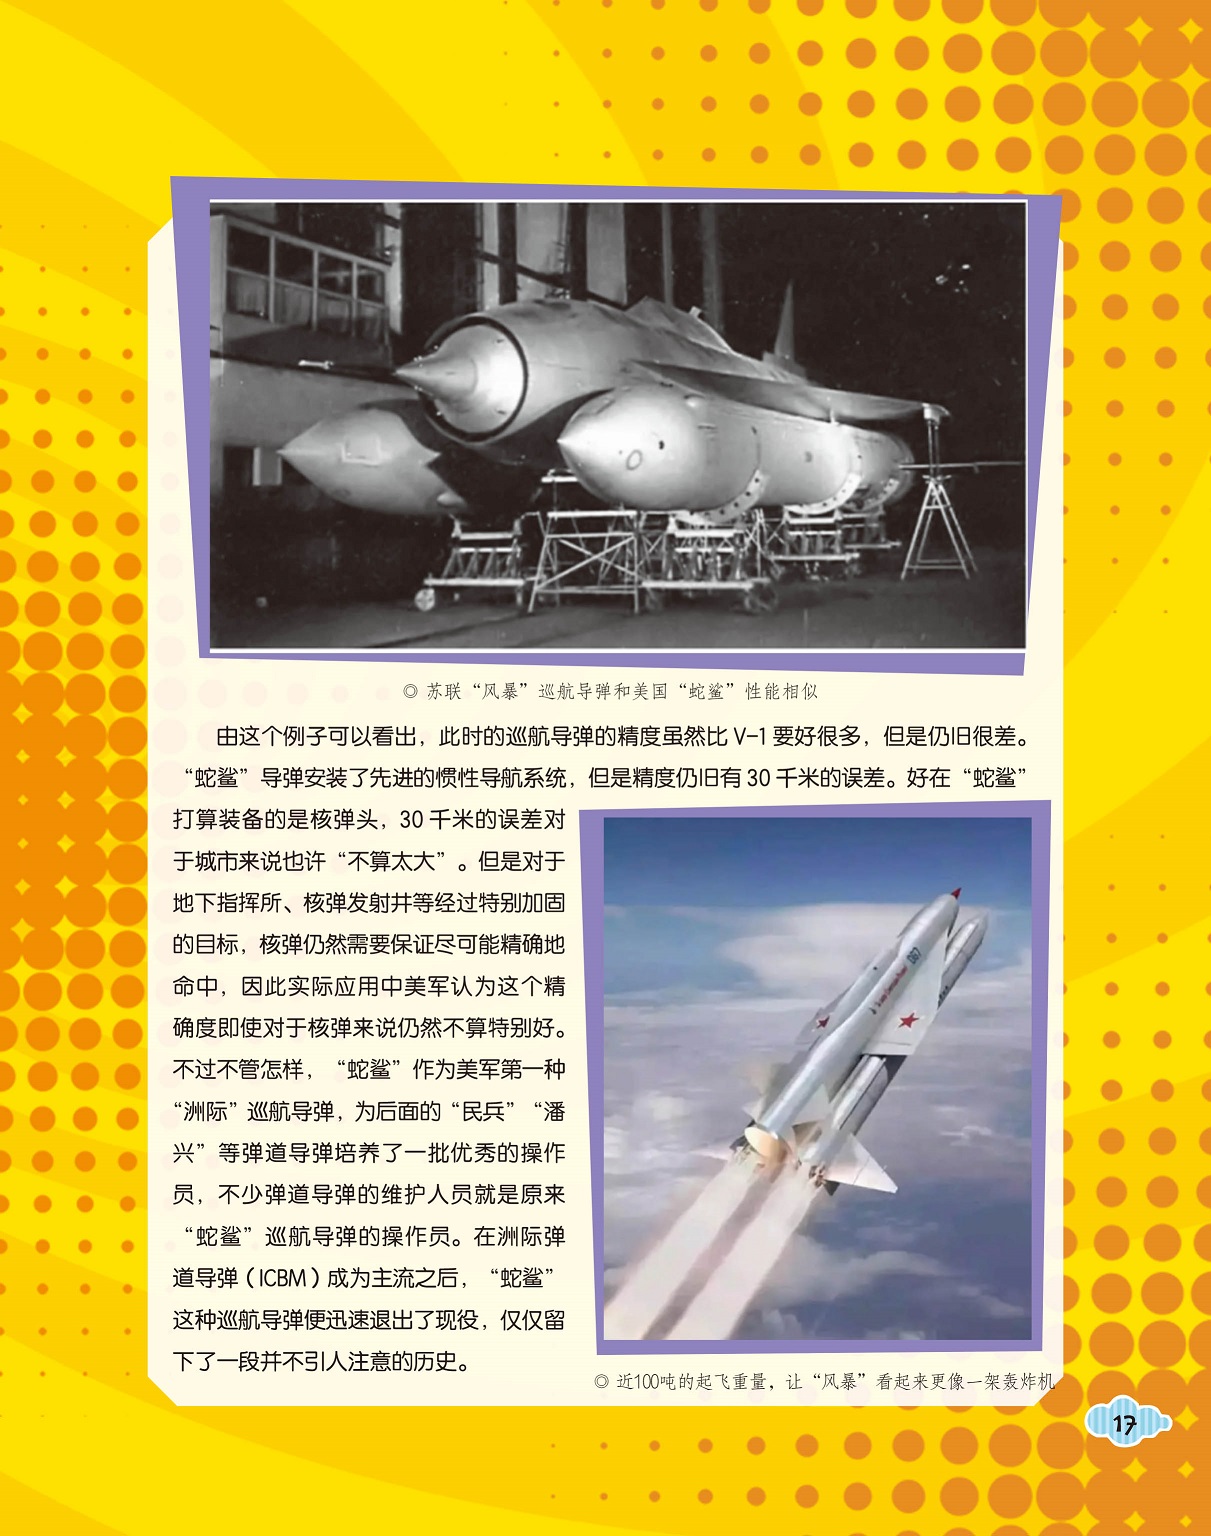 历史的巡航导弹,洲际弹道导弹成为主流